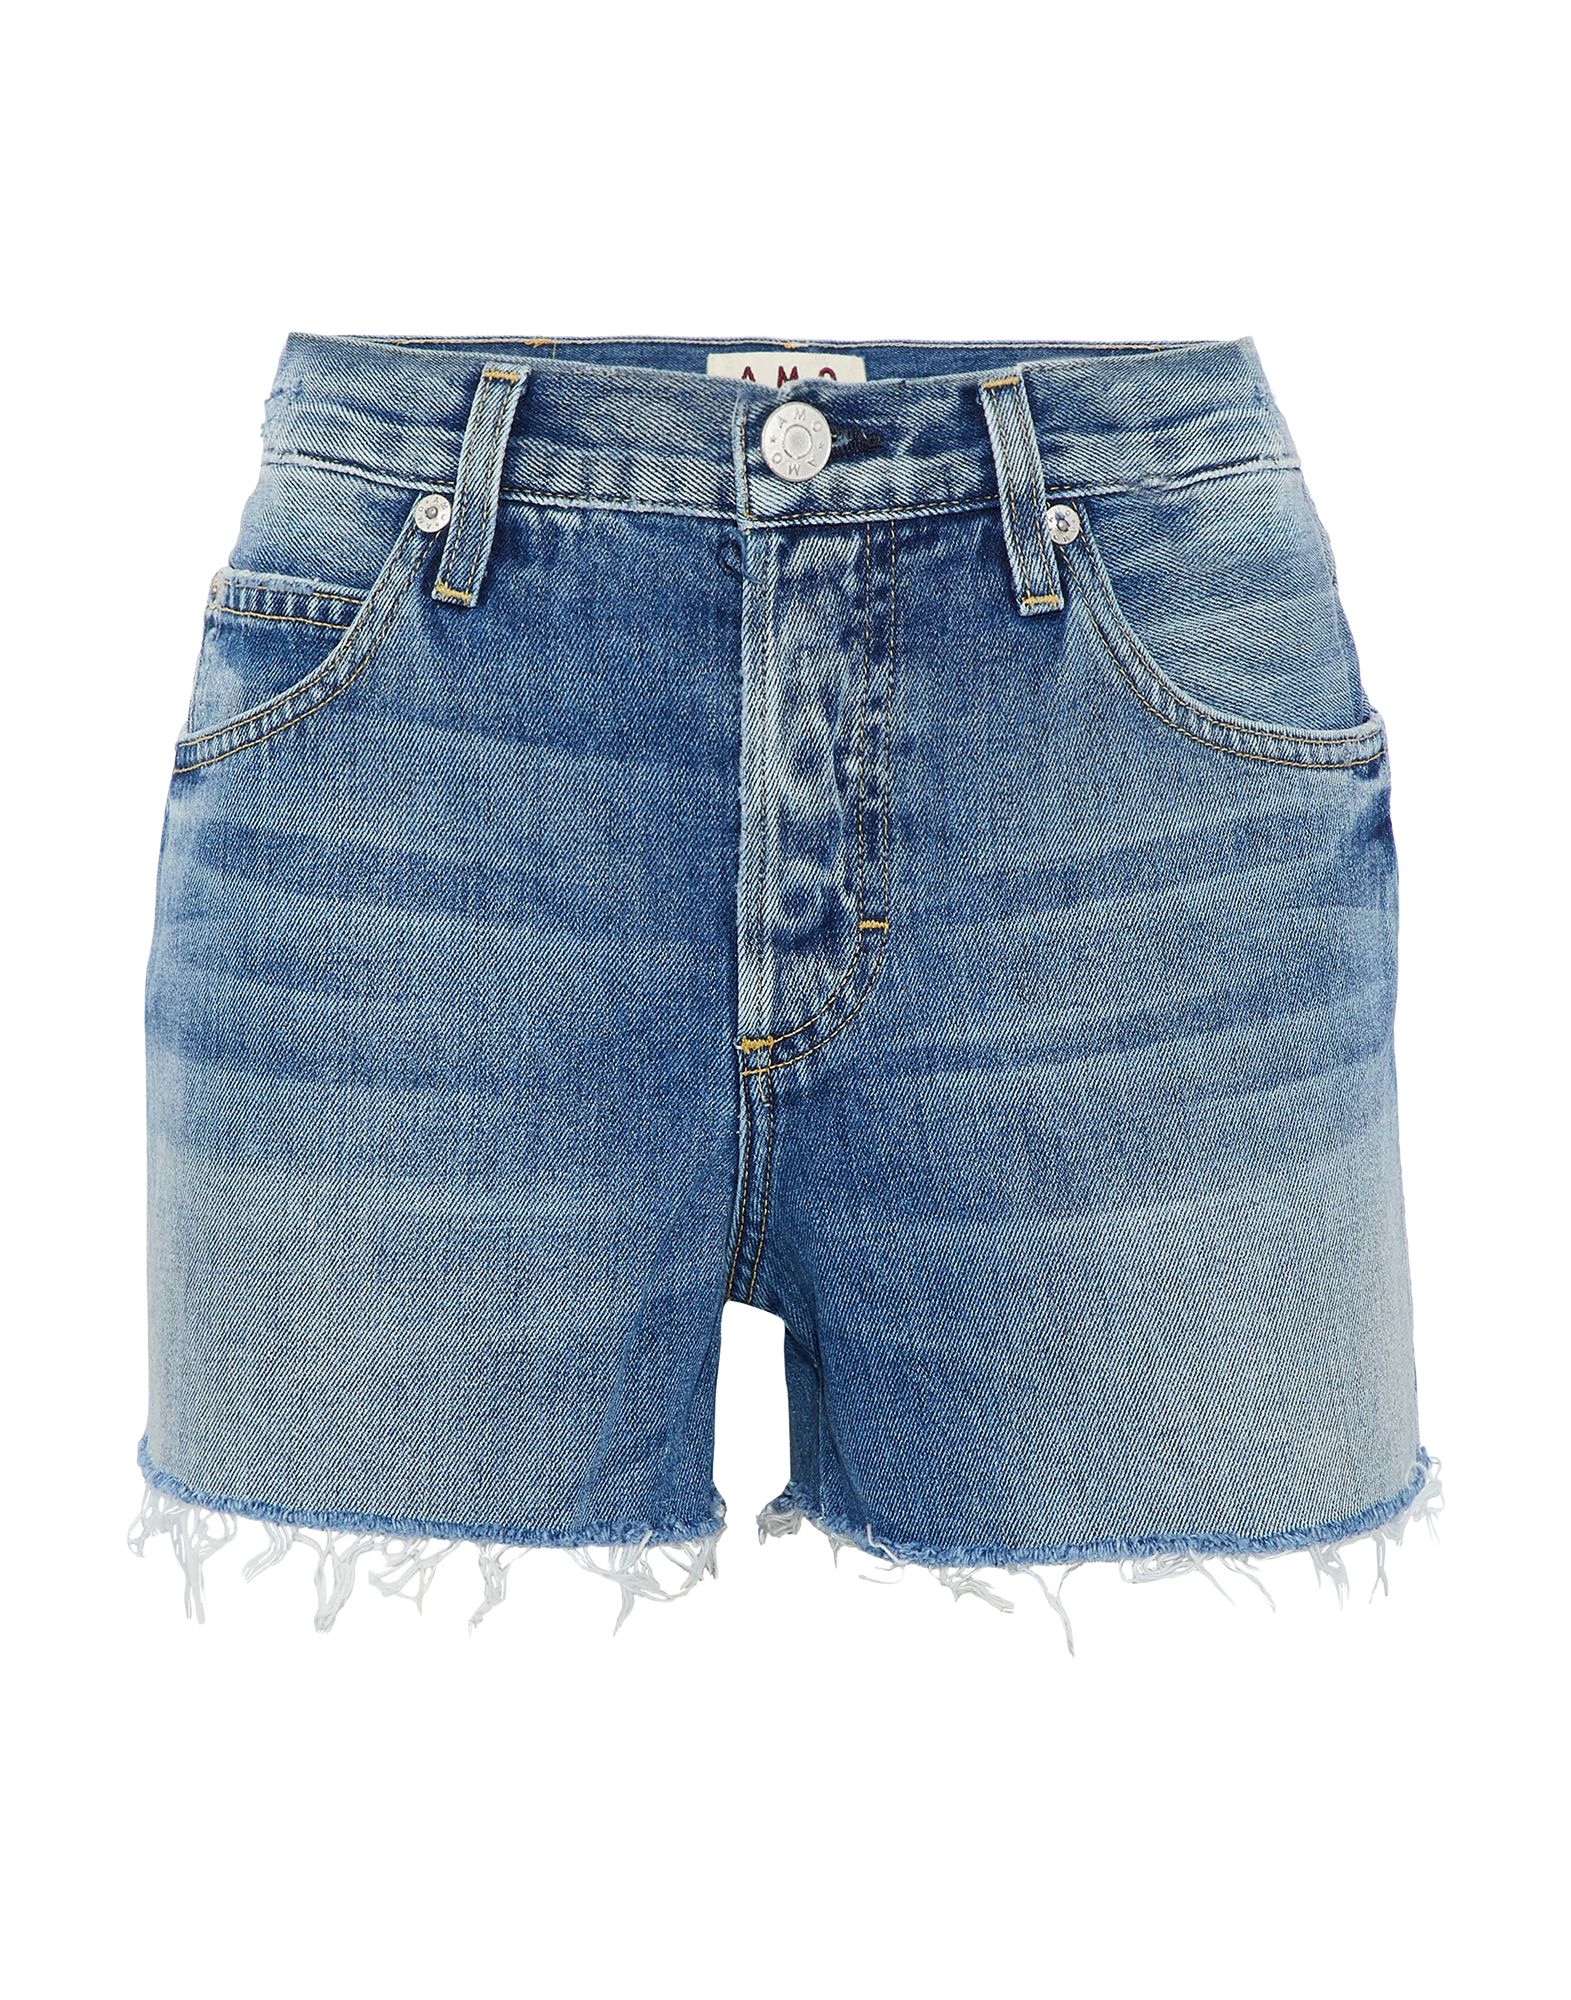 Amo Denim Shorts In Blue | ModeSens